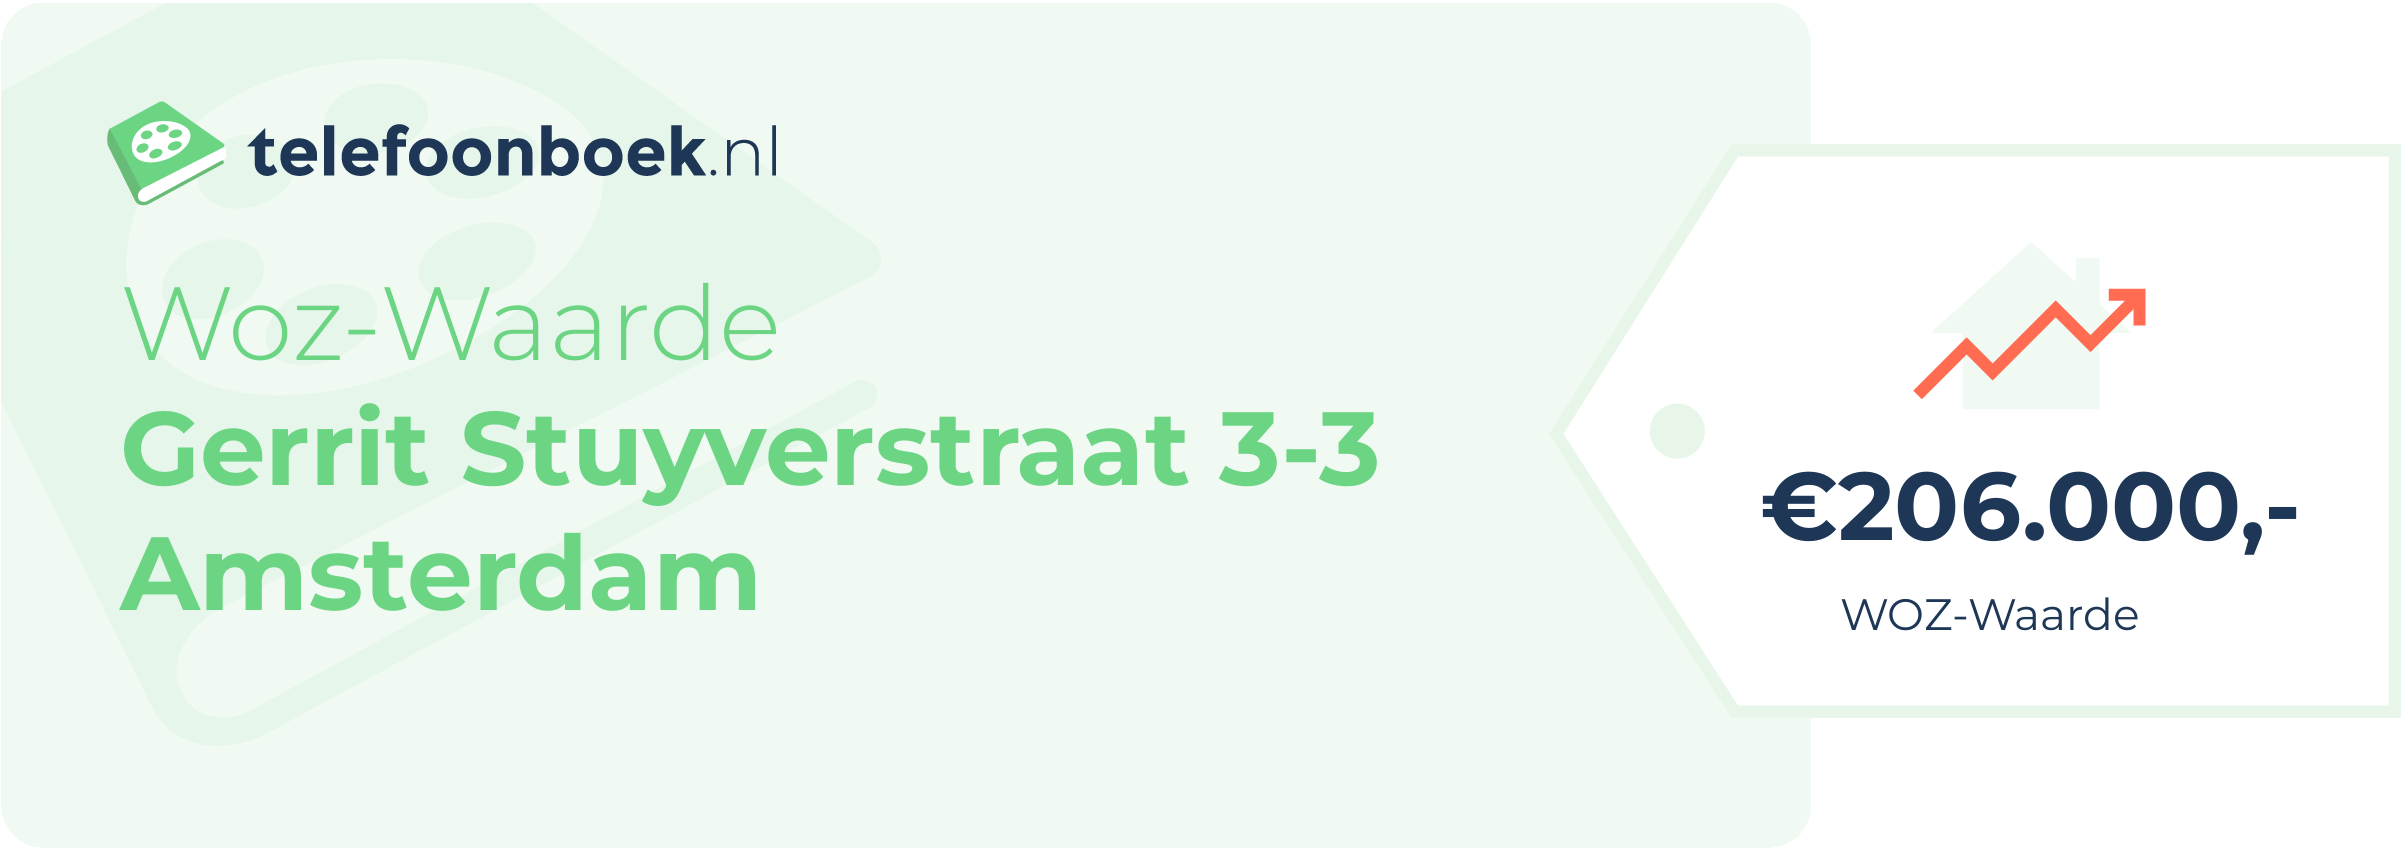 WOZ-waarde Gerrit Stuyverstraat 3-3 Amsterdam